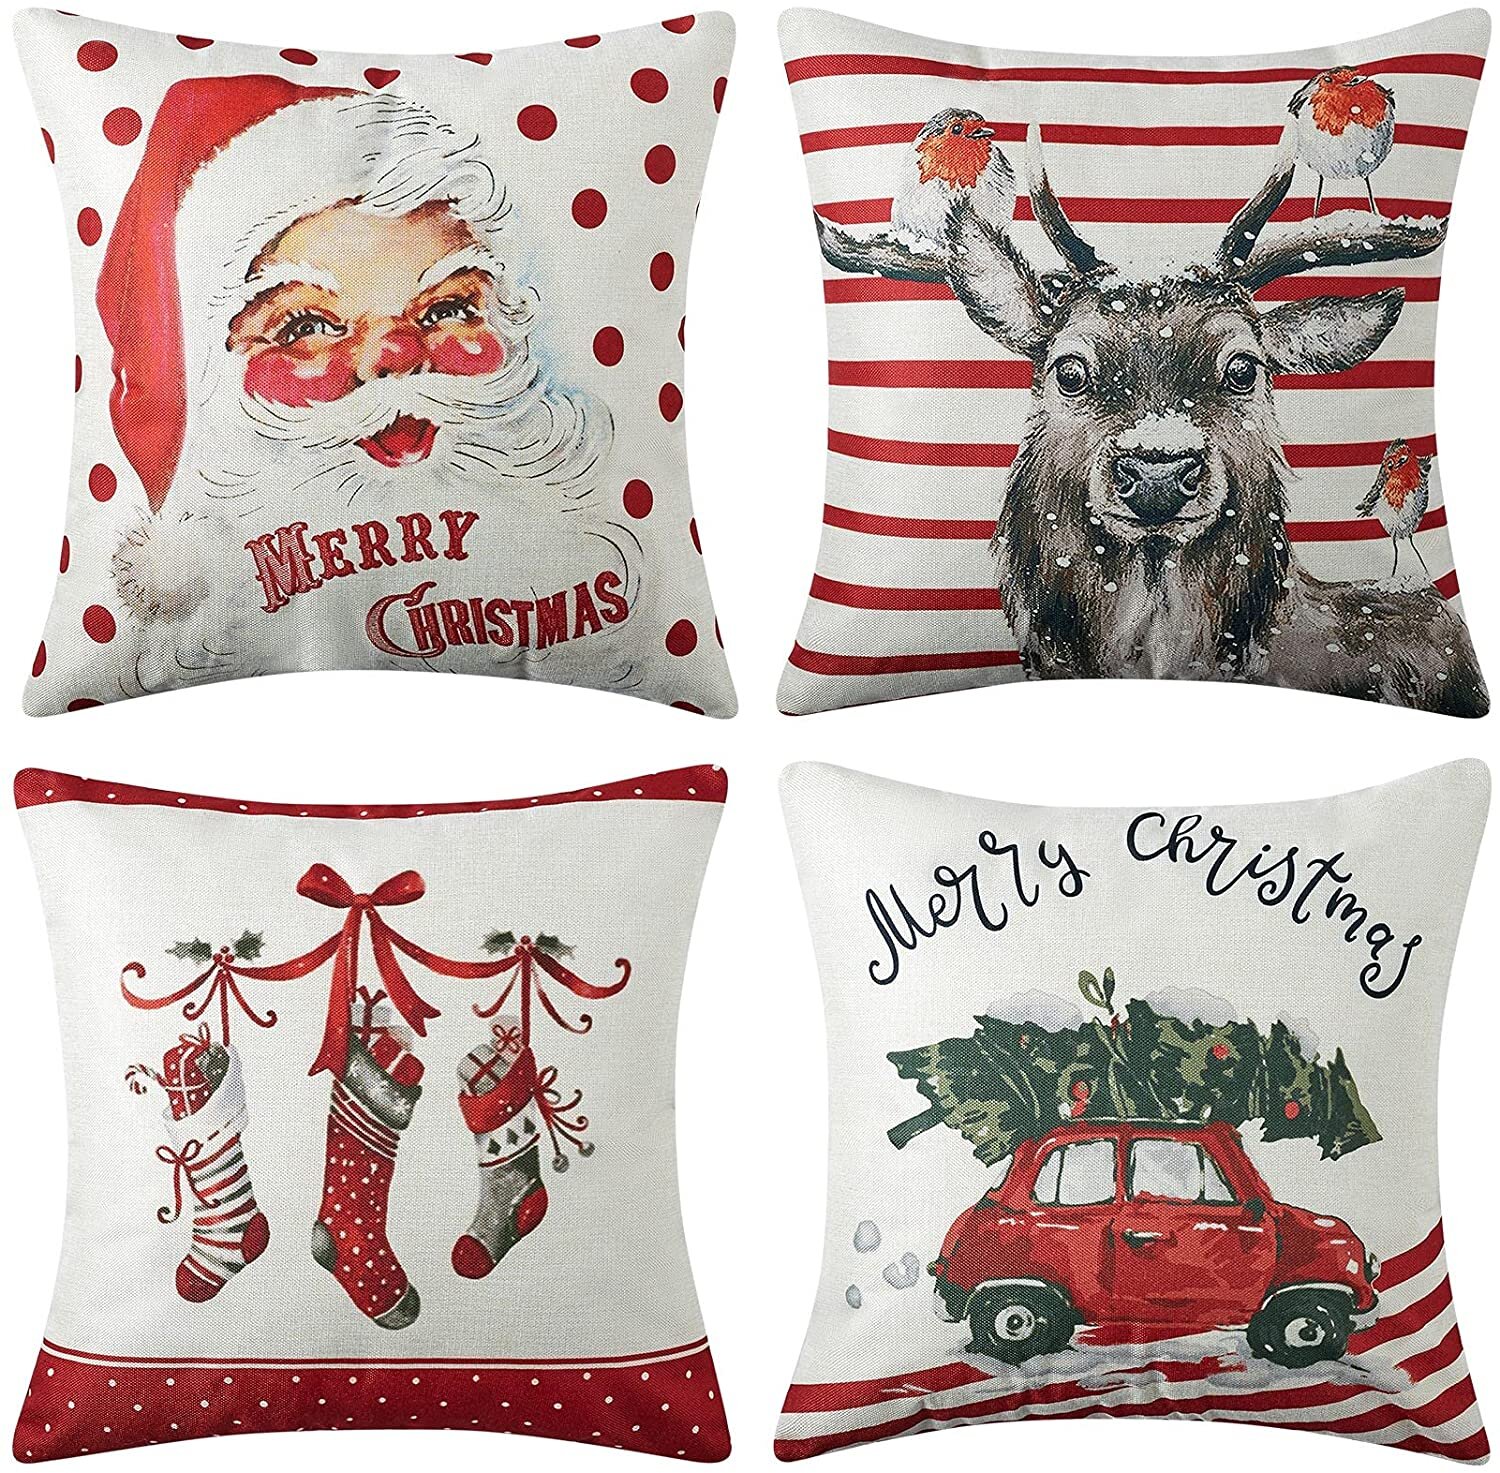 Set of 4 Christmas Deer Animal Print Throw Pillow Cover Winter Home Decor 18x18